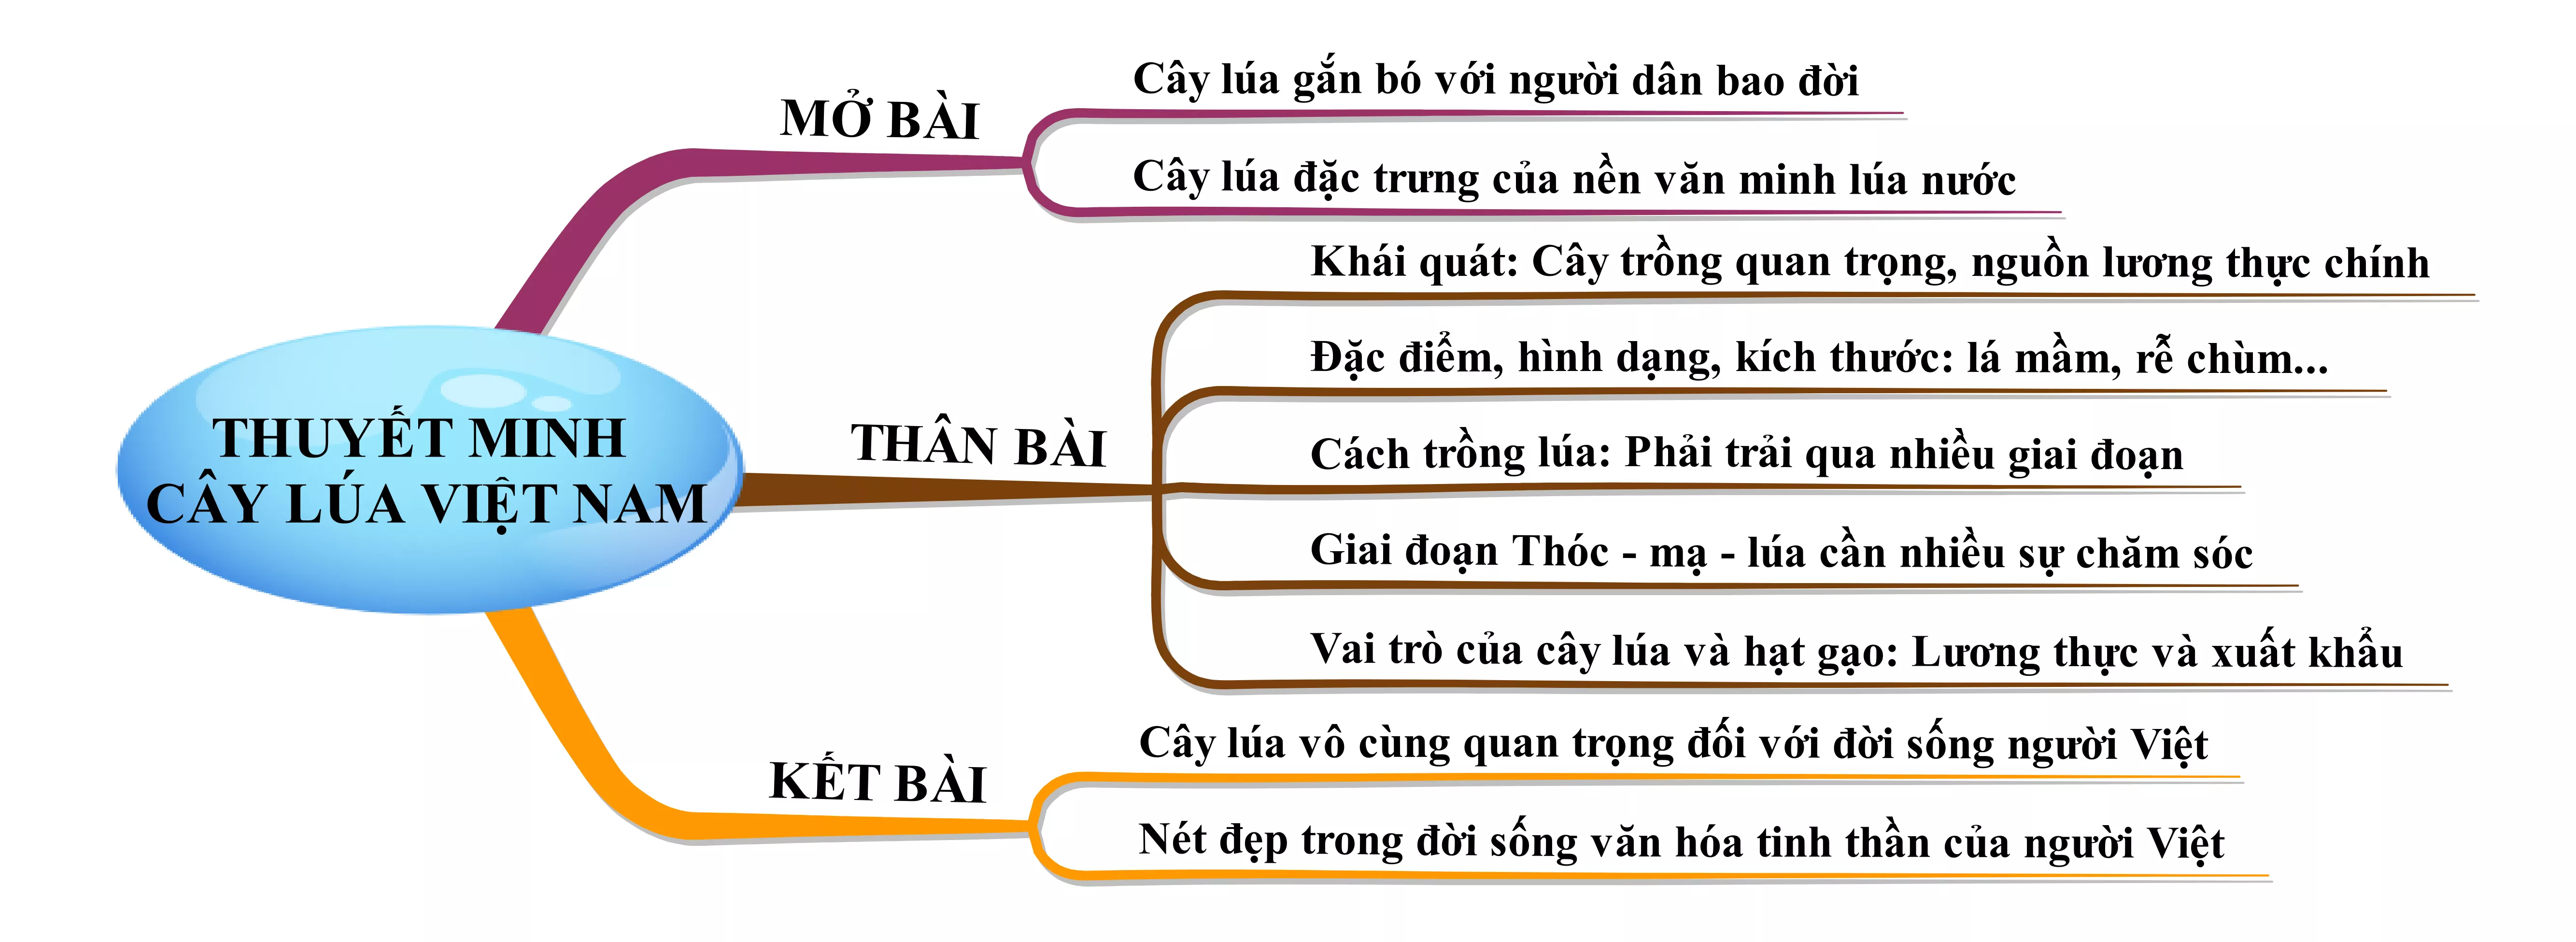 Thuyết minh cây lúa Việt Nam năm 2021 Thuyet Minh Cay Lua Viet Nam Nam 2021 21987